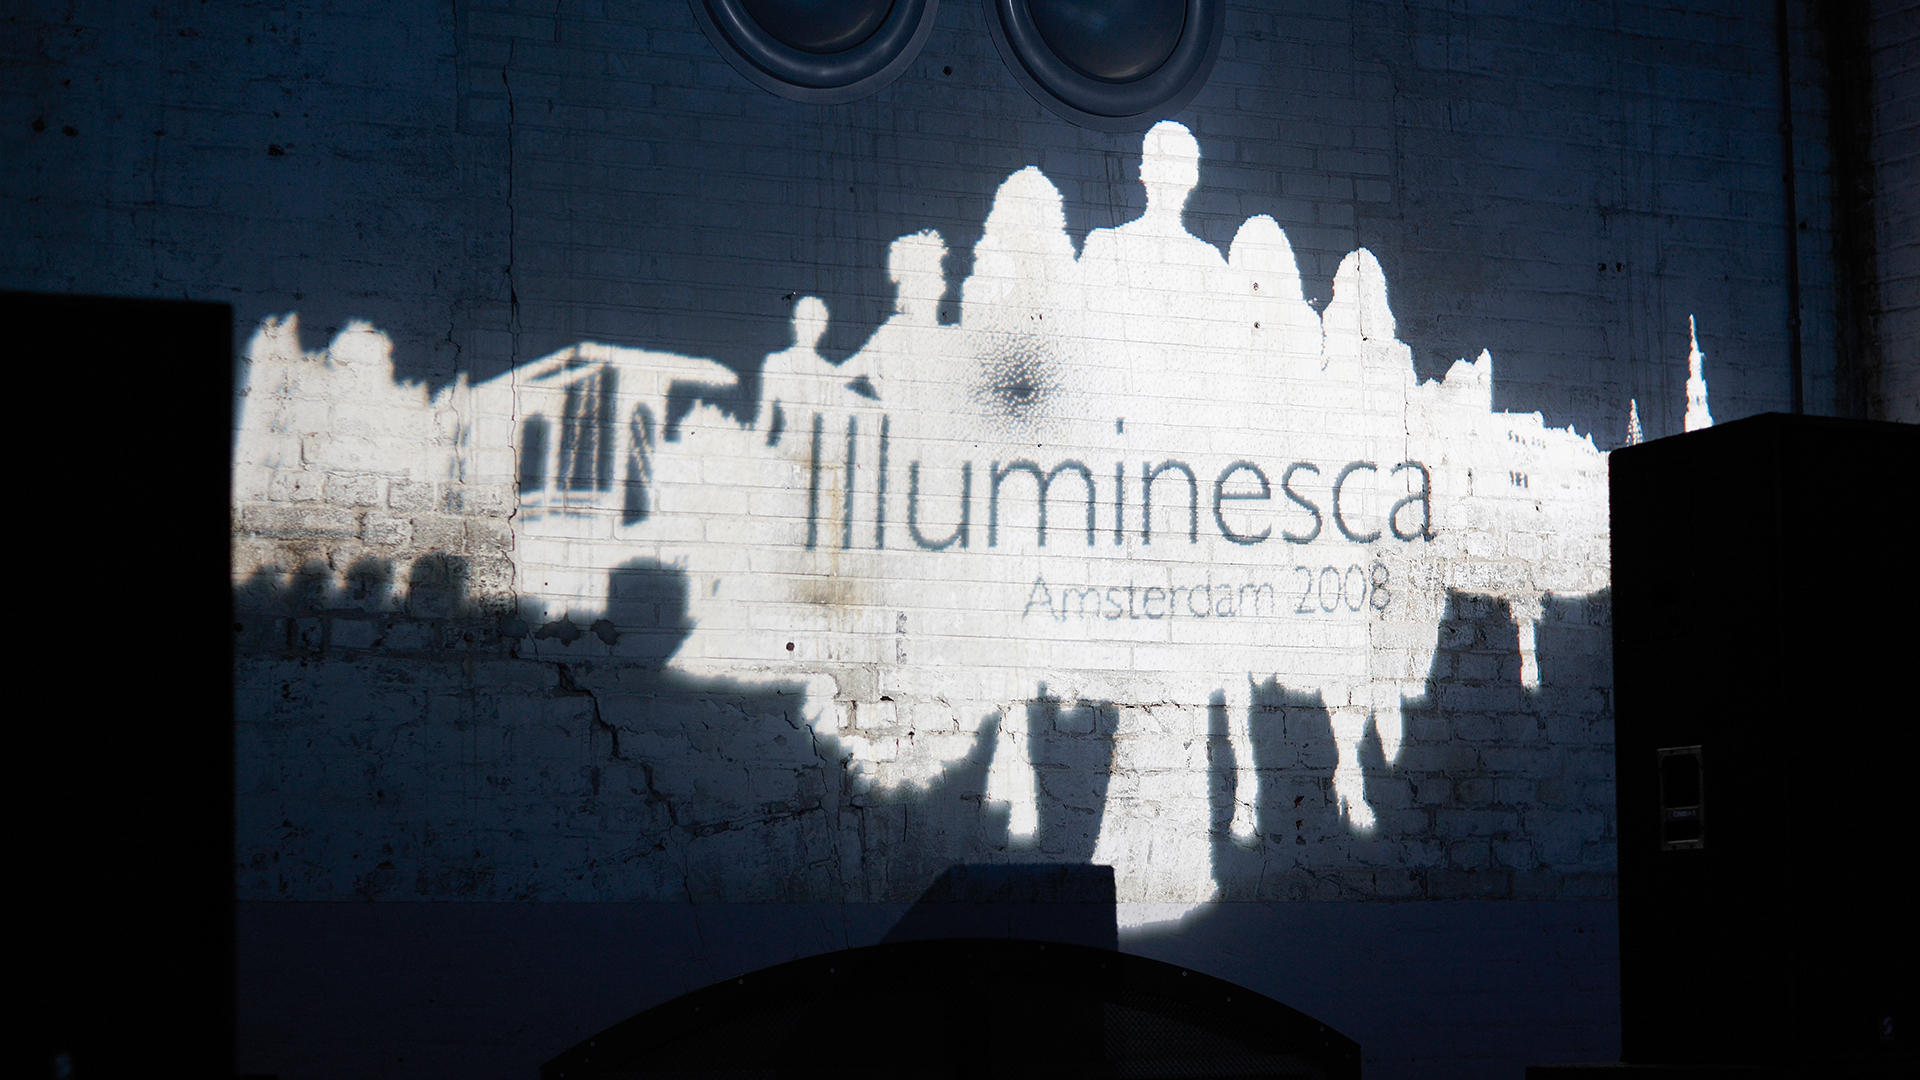 Dart inszeniert die Ausstellung Illuminesca 2008 für Philips